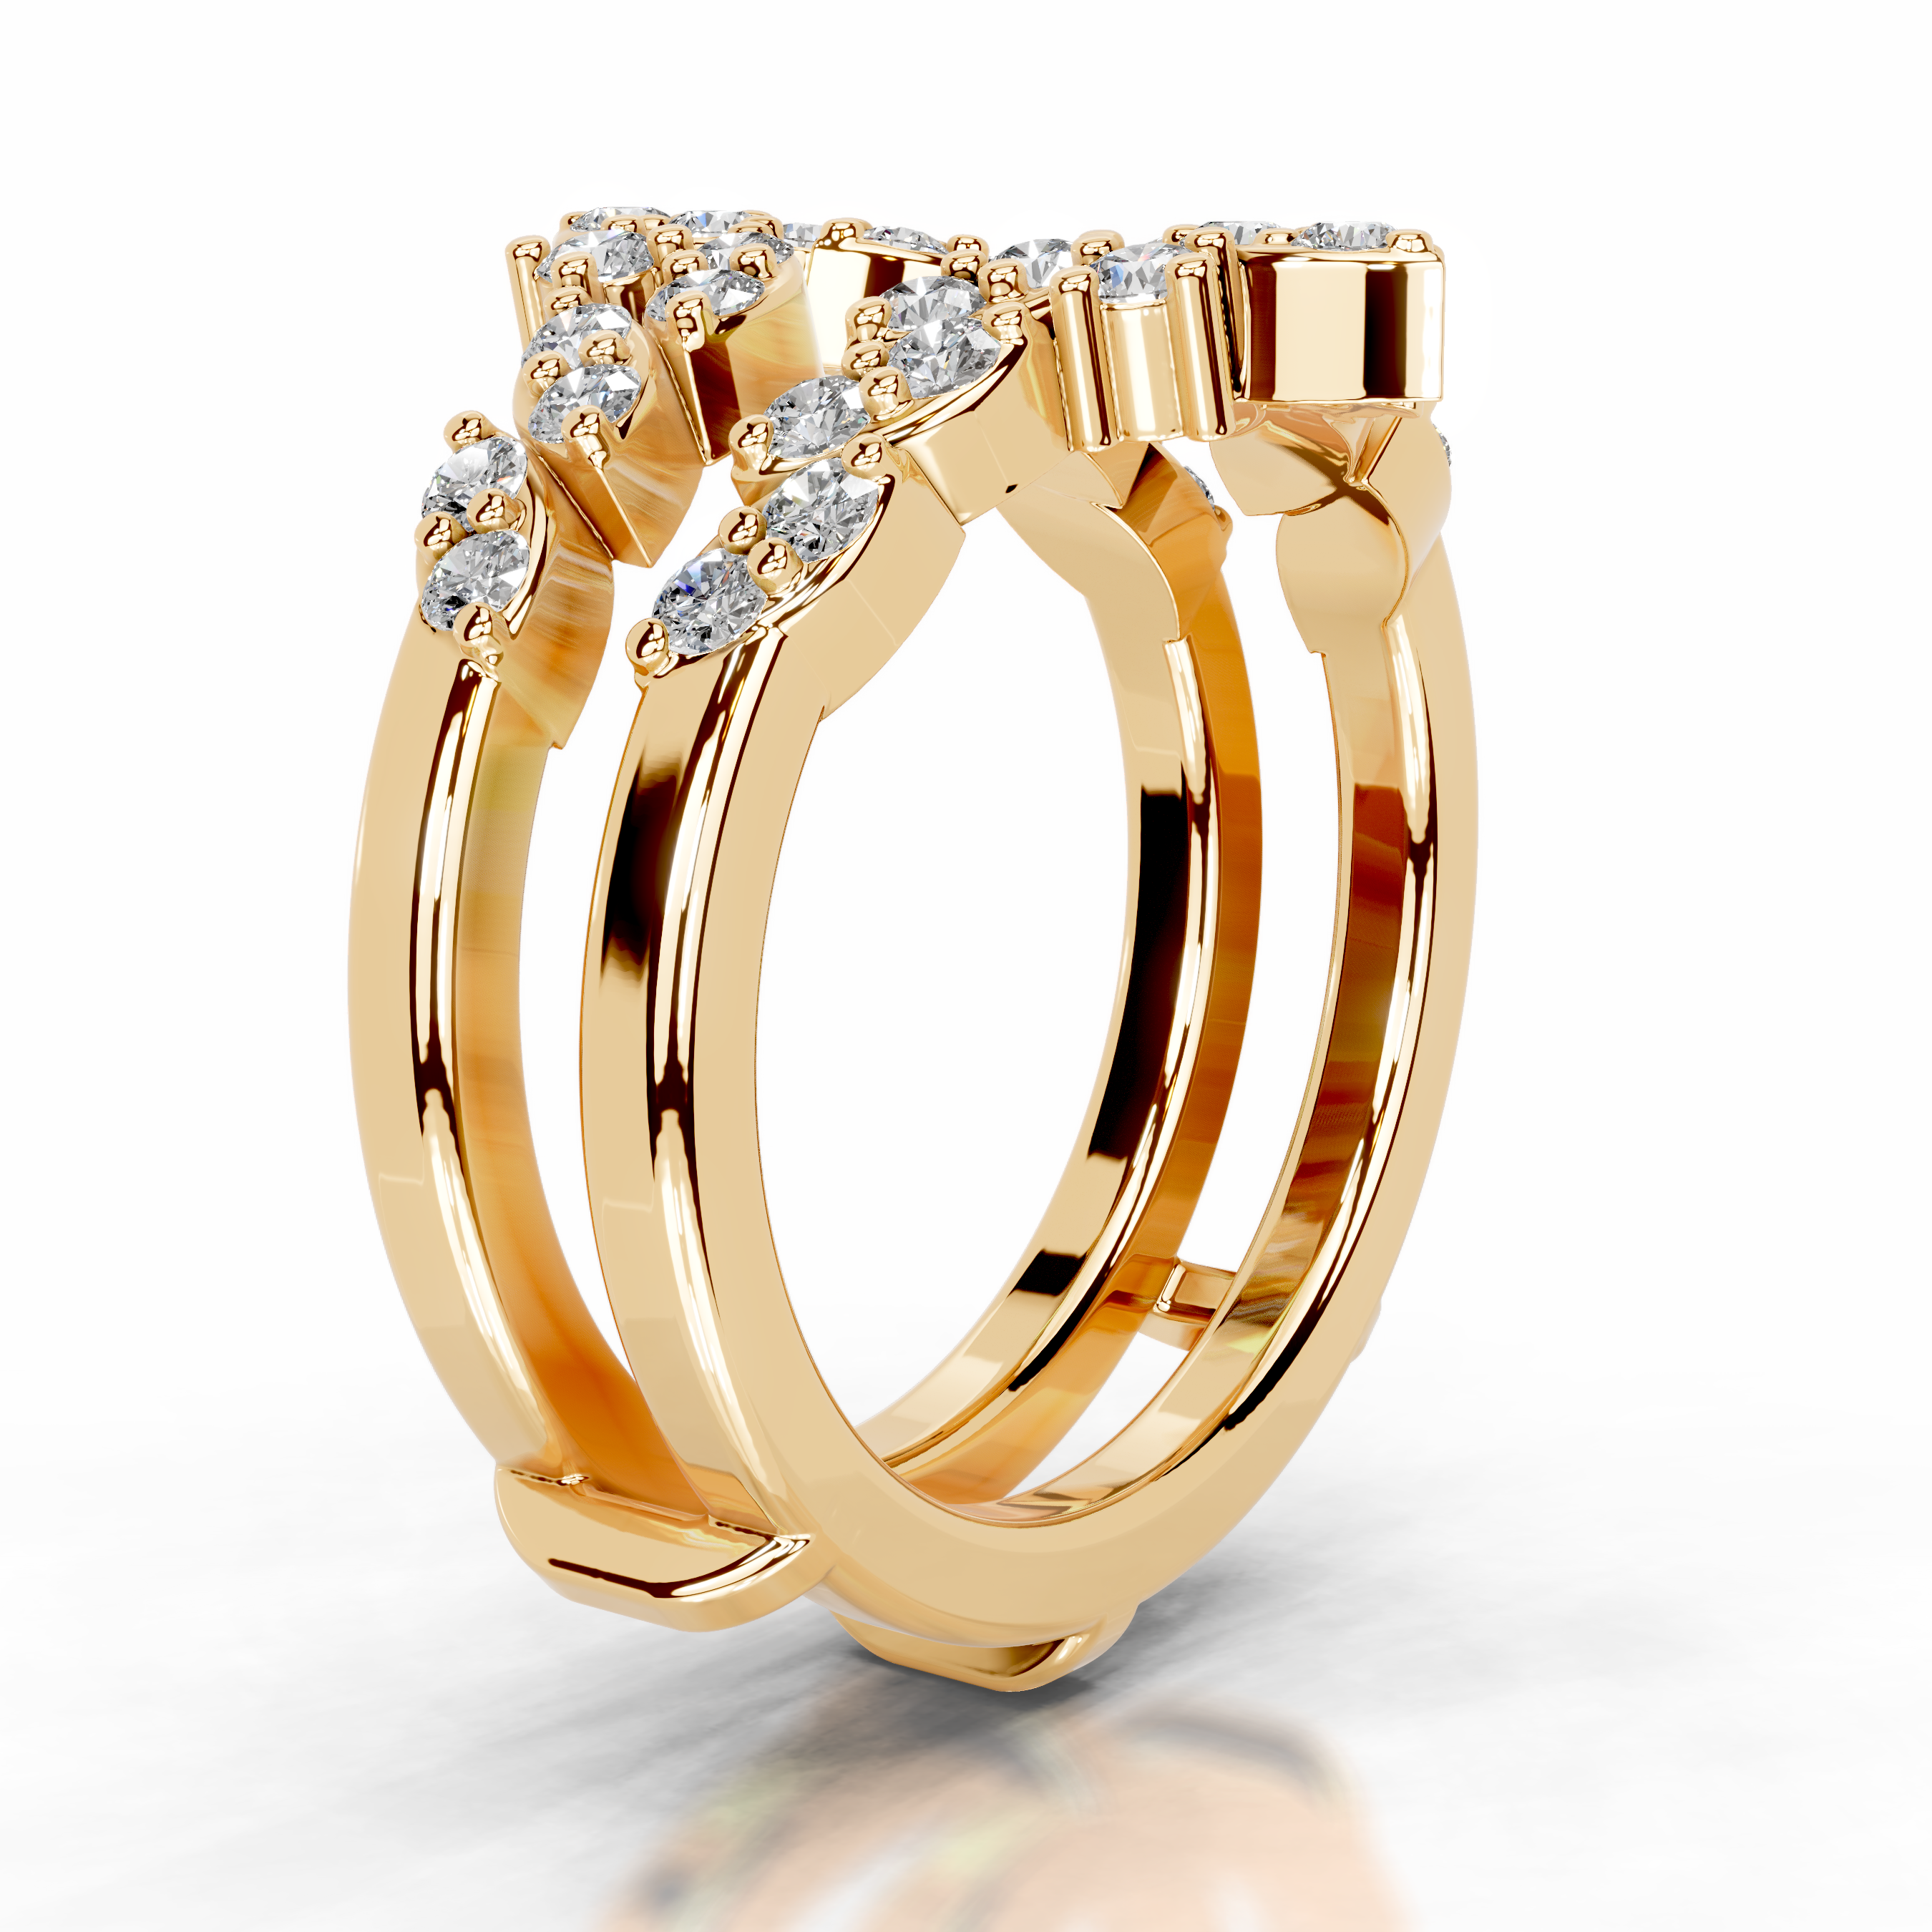 Nikita Diamond Wedding Ring   (0.70 Carat) -18K Yellow Gold